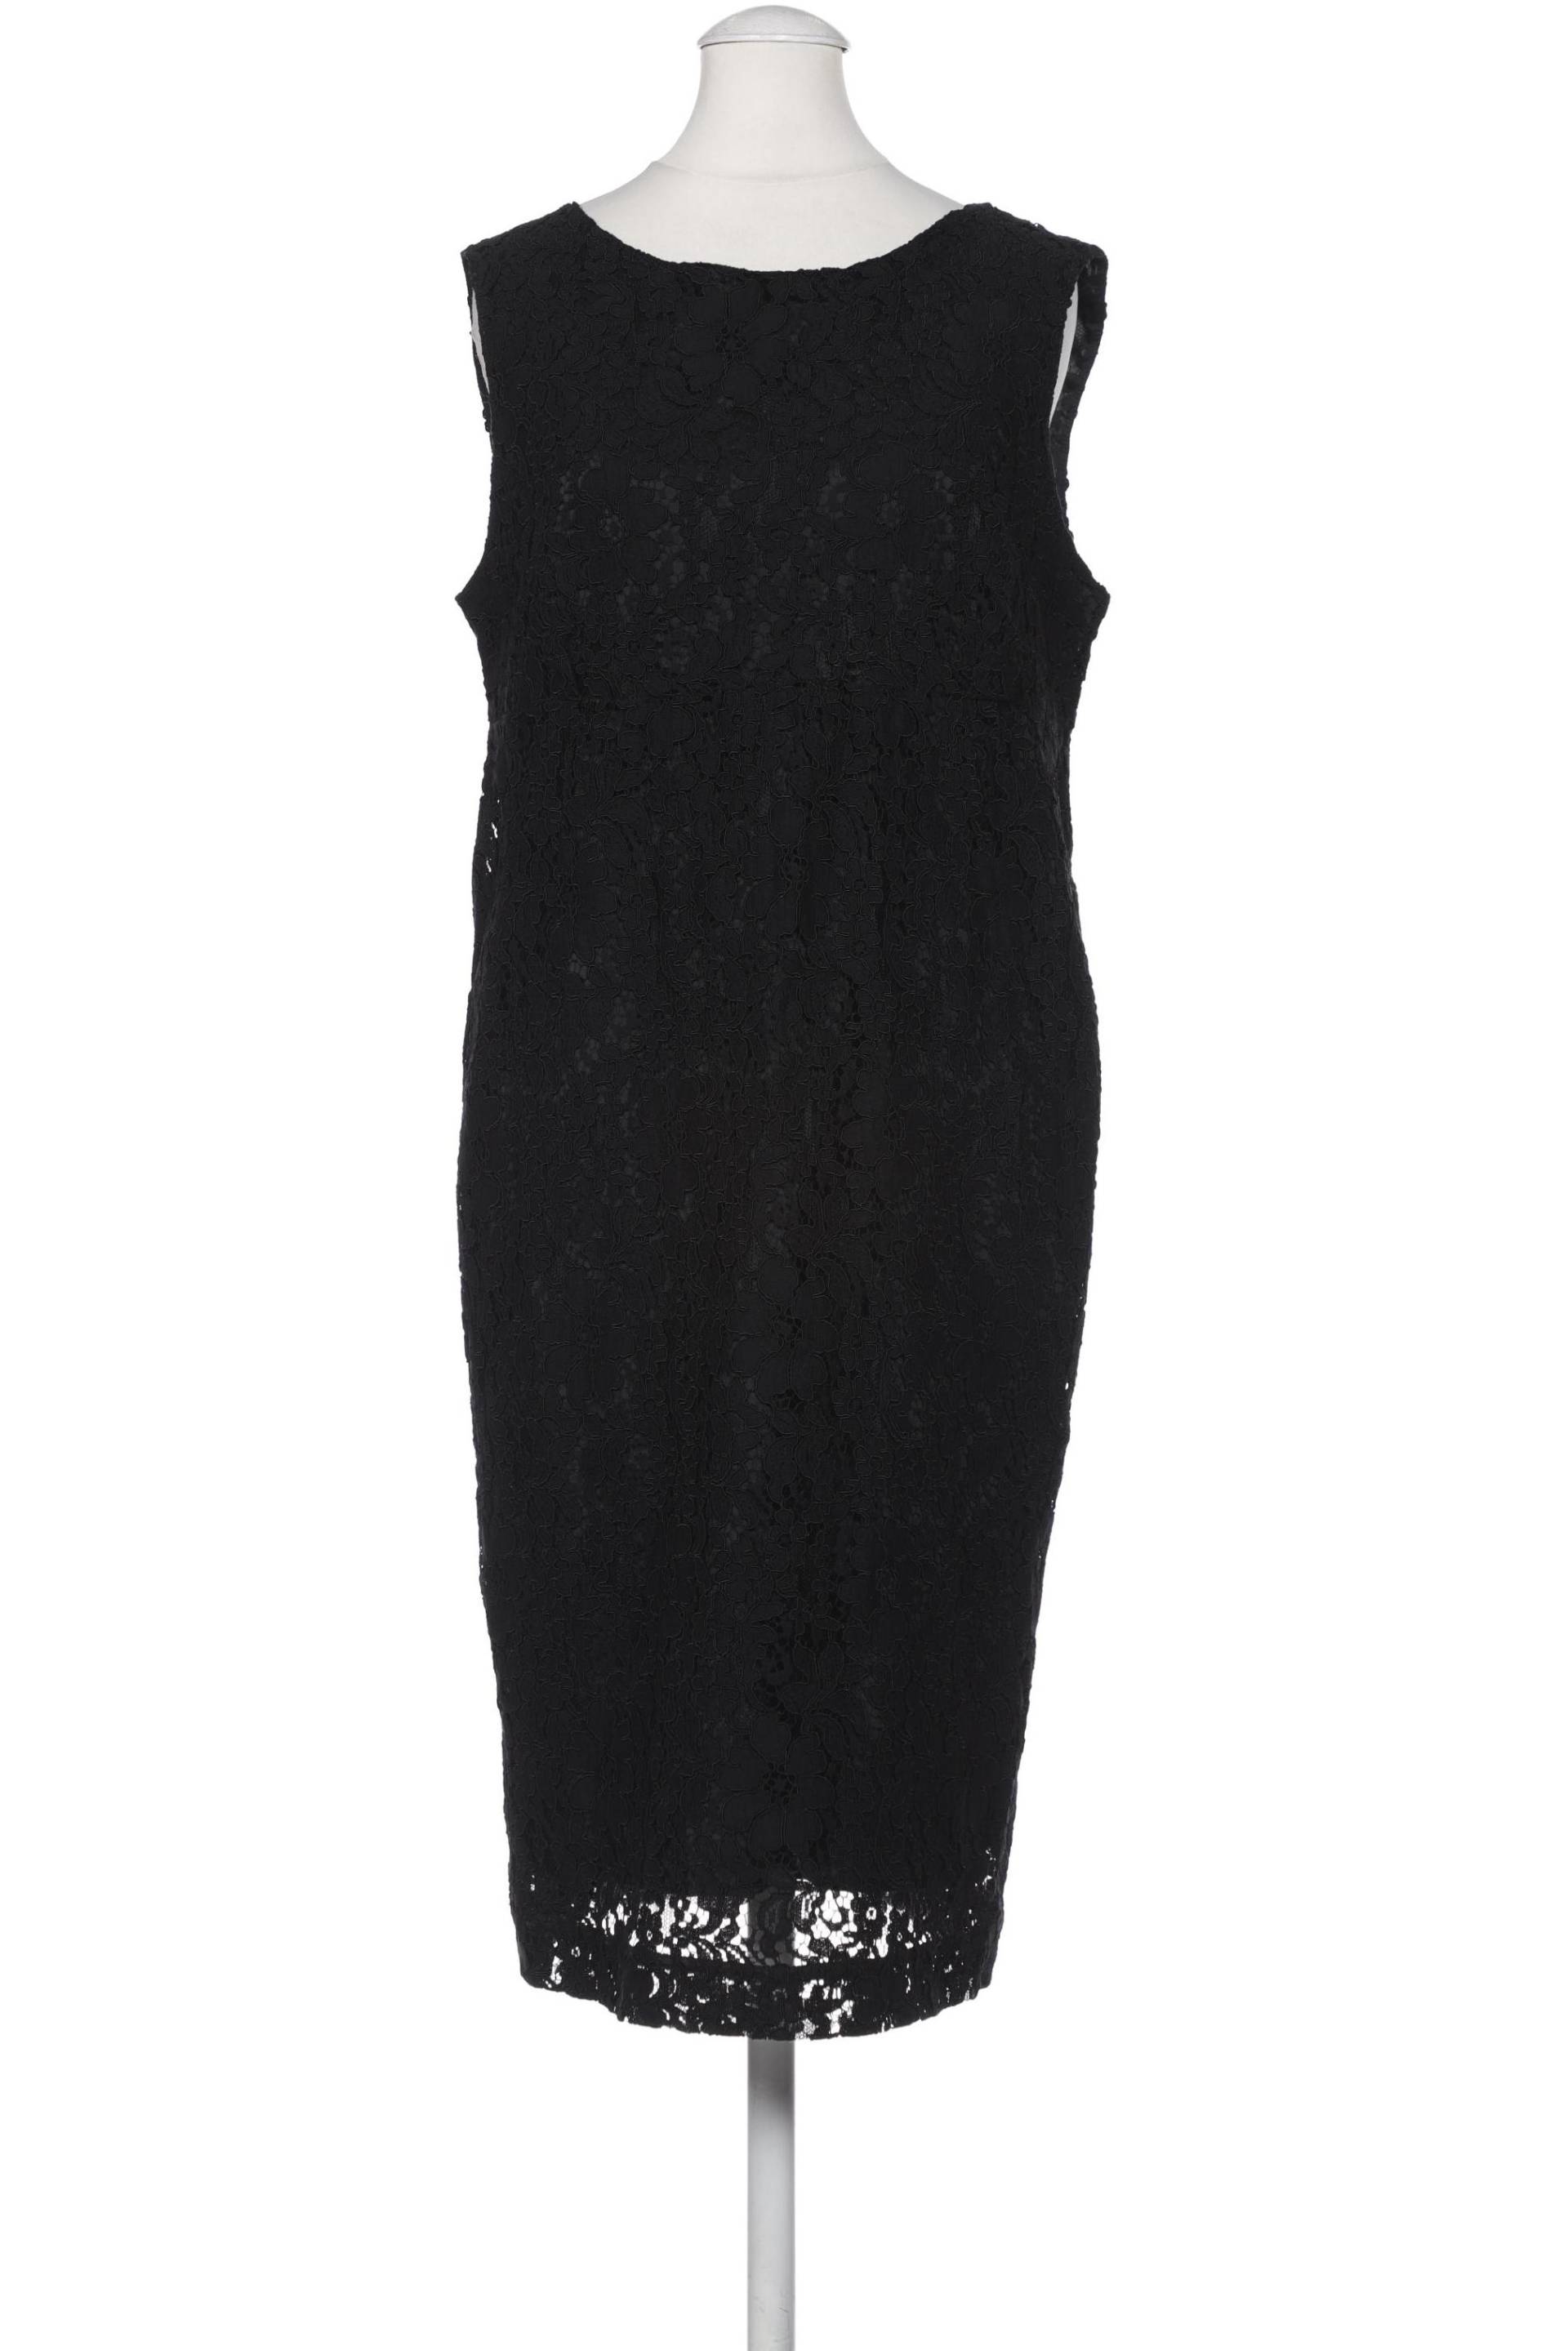 Stefanel Damen Kleid, schwarz, Gr. 36 von Stefanel